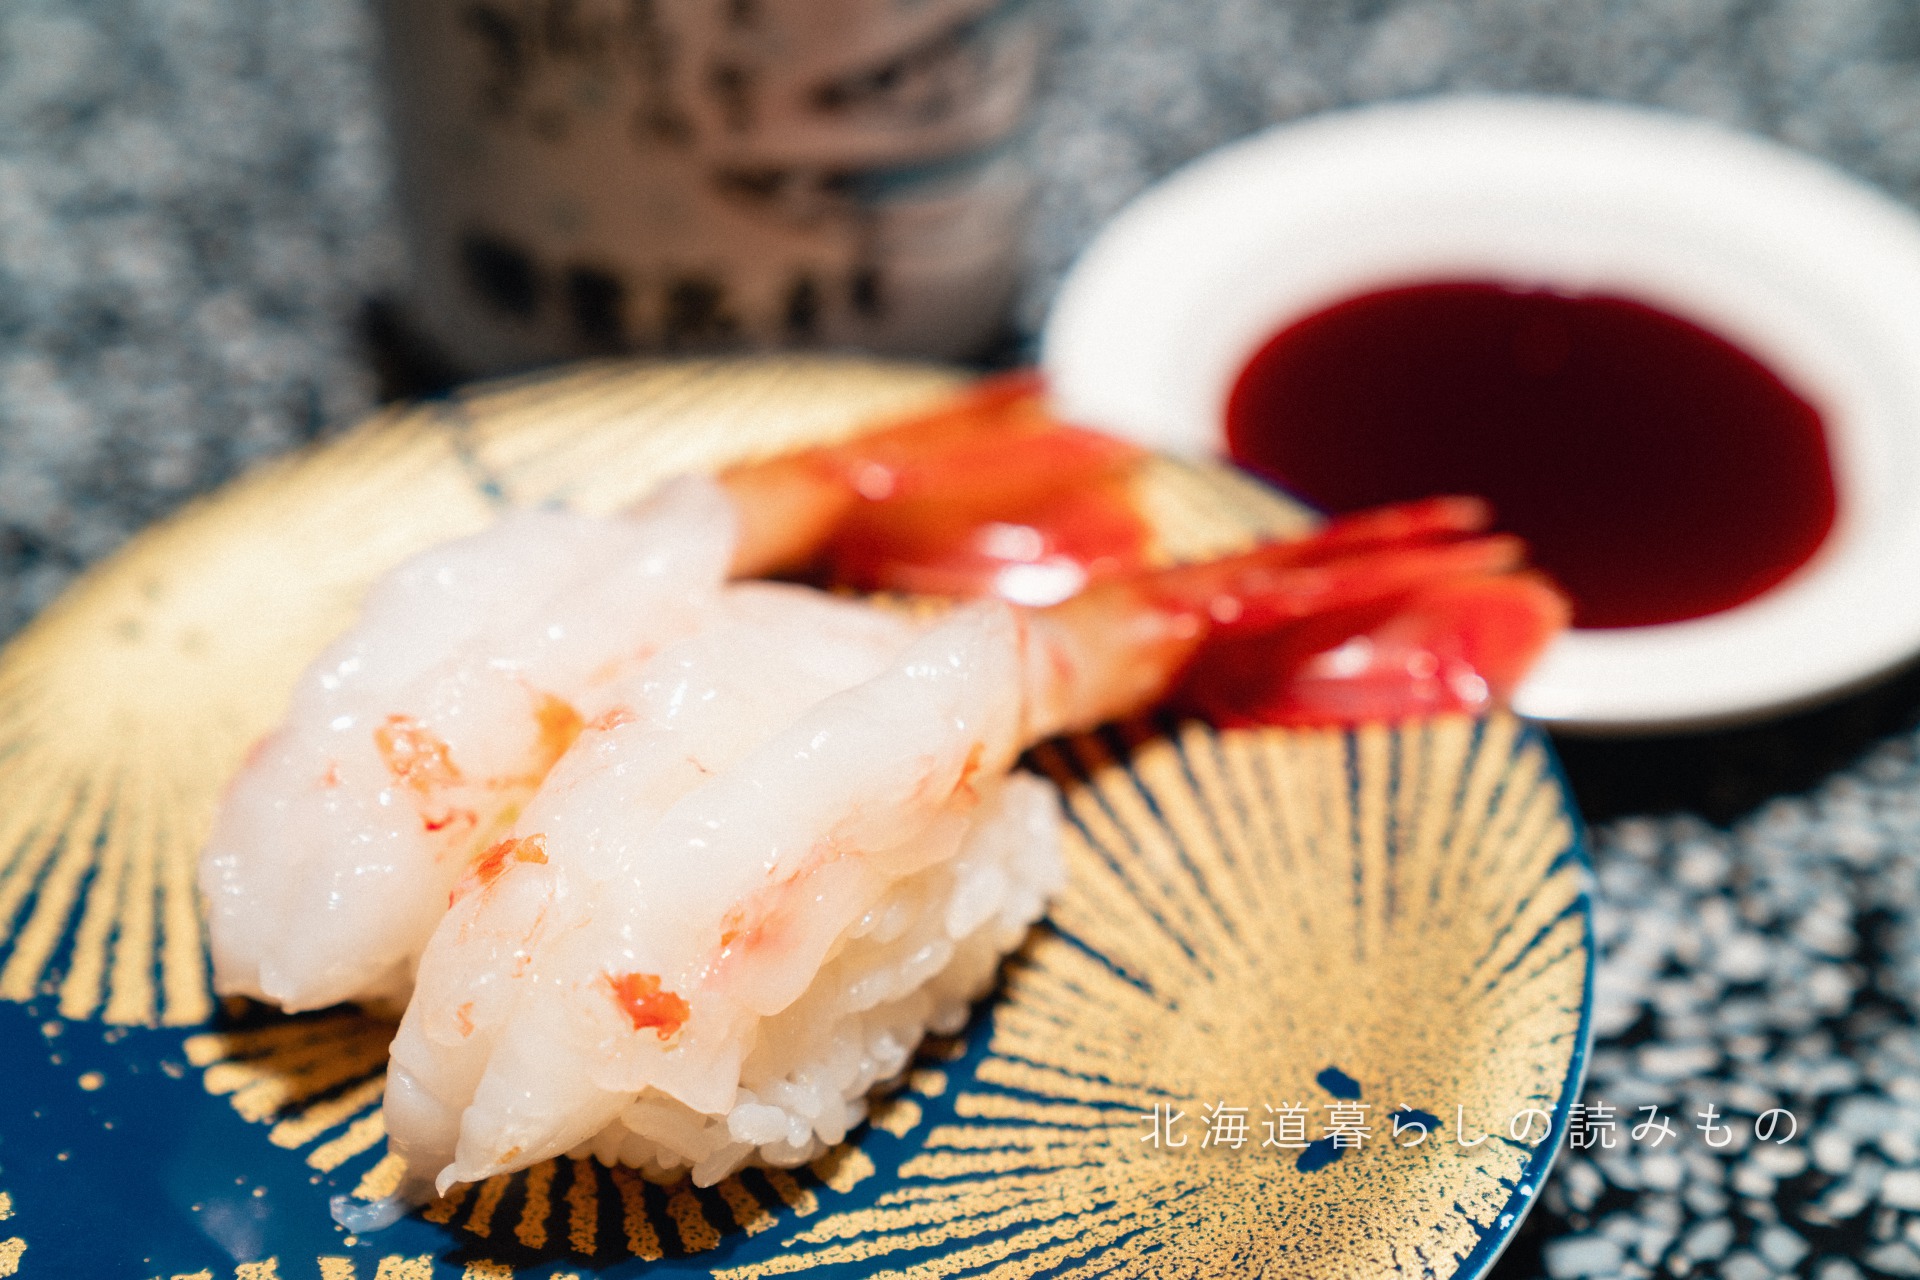 回転寿司 根室花まるのメニュー「ぼたんえび」の写真